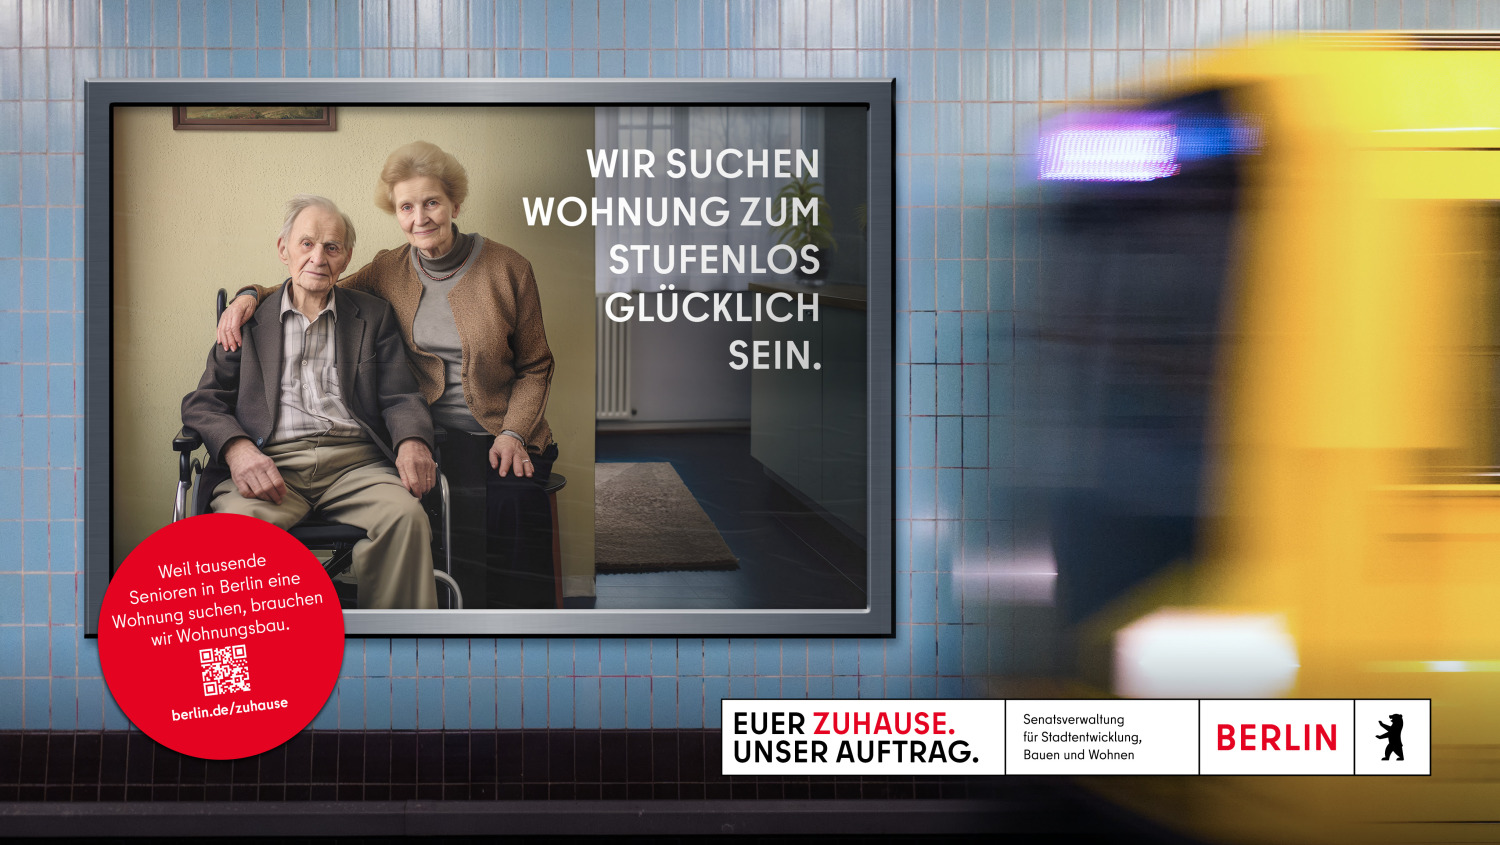 Auf dem Bild ist eine Werbetafel in einer U-Bahn-Station zu sehen. Die Tafel zeigt ein älteres Paar, wobei der Mann im Rollstuhl sitzt. Der Text auf der Tafel lautet: “WIR SUCHEN WOHNUNG ZUM STUFENLOS GLÜCKLICH SEIN.” Im Hintergrund bewegt sich ein Zug.